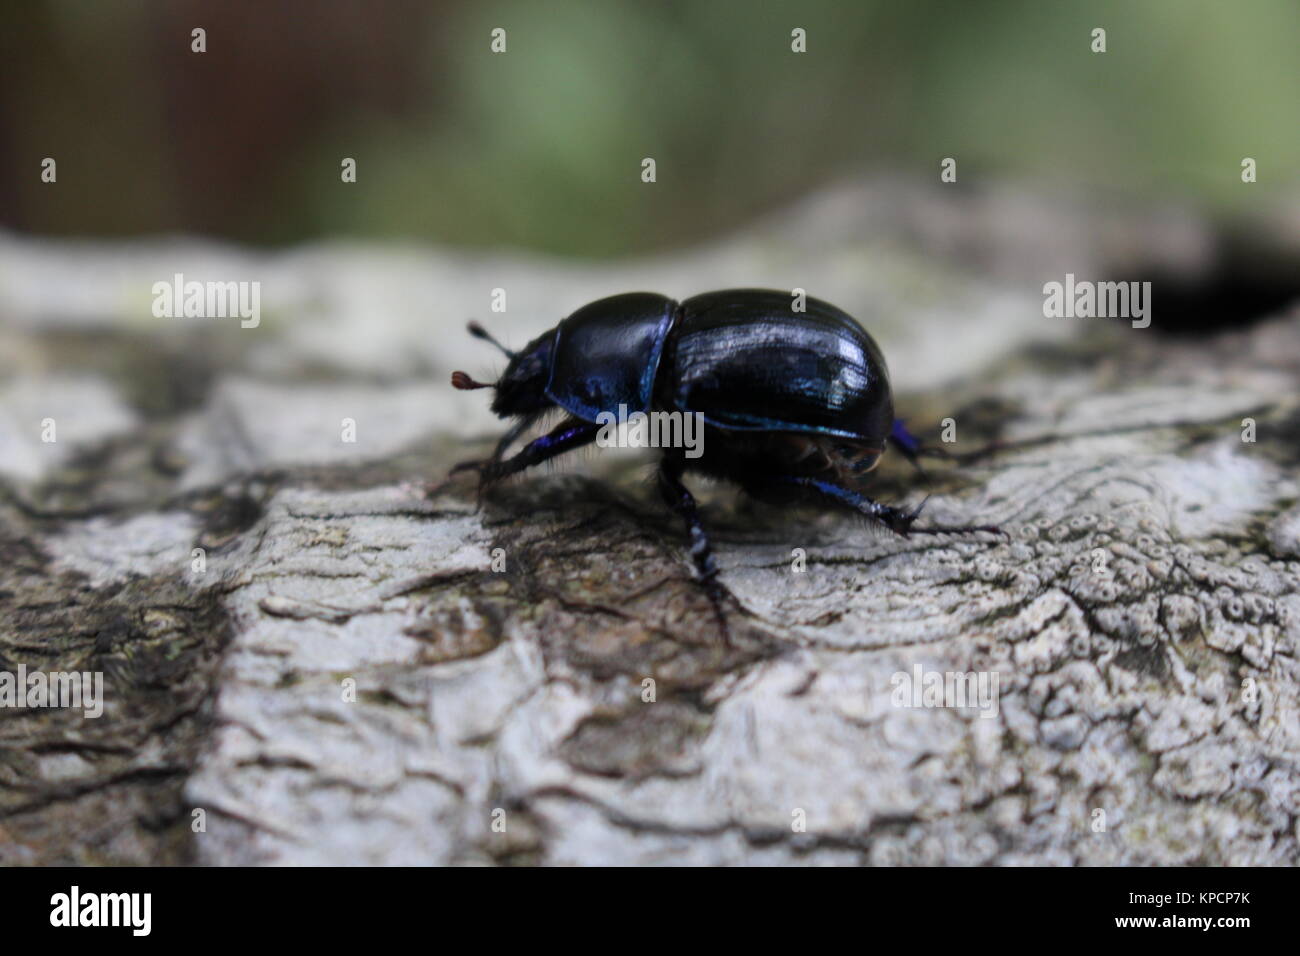 Escarabajos, Dor escarabajo, Geotropes stercorarius Foto de stock